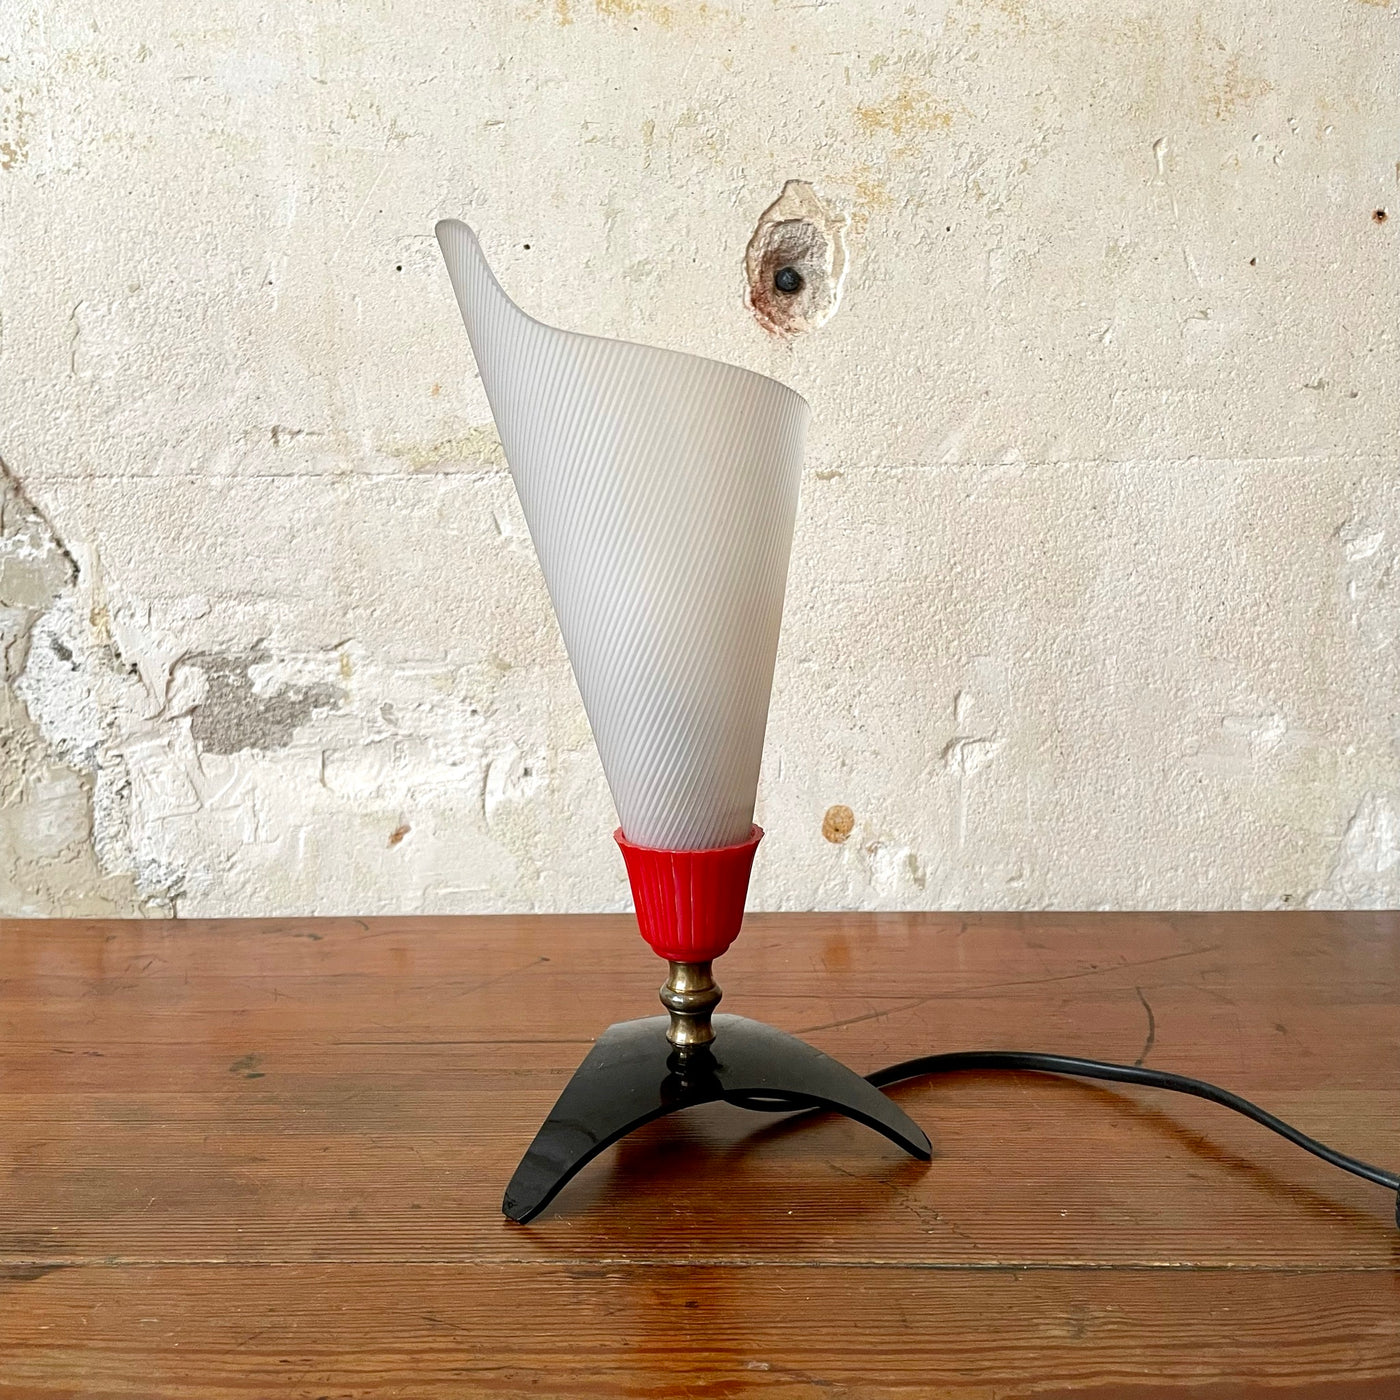 Petite lampe à poser années 50